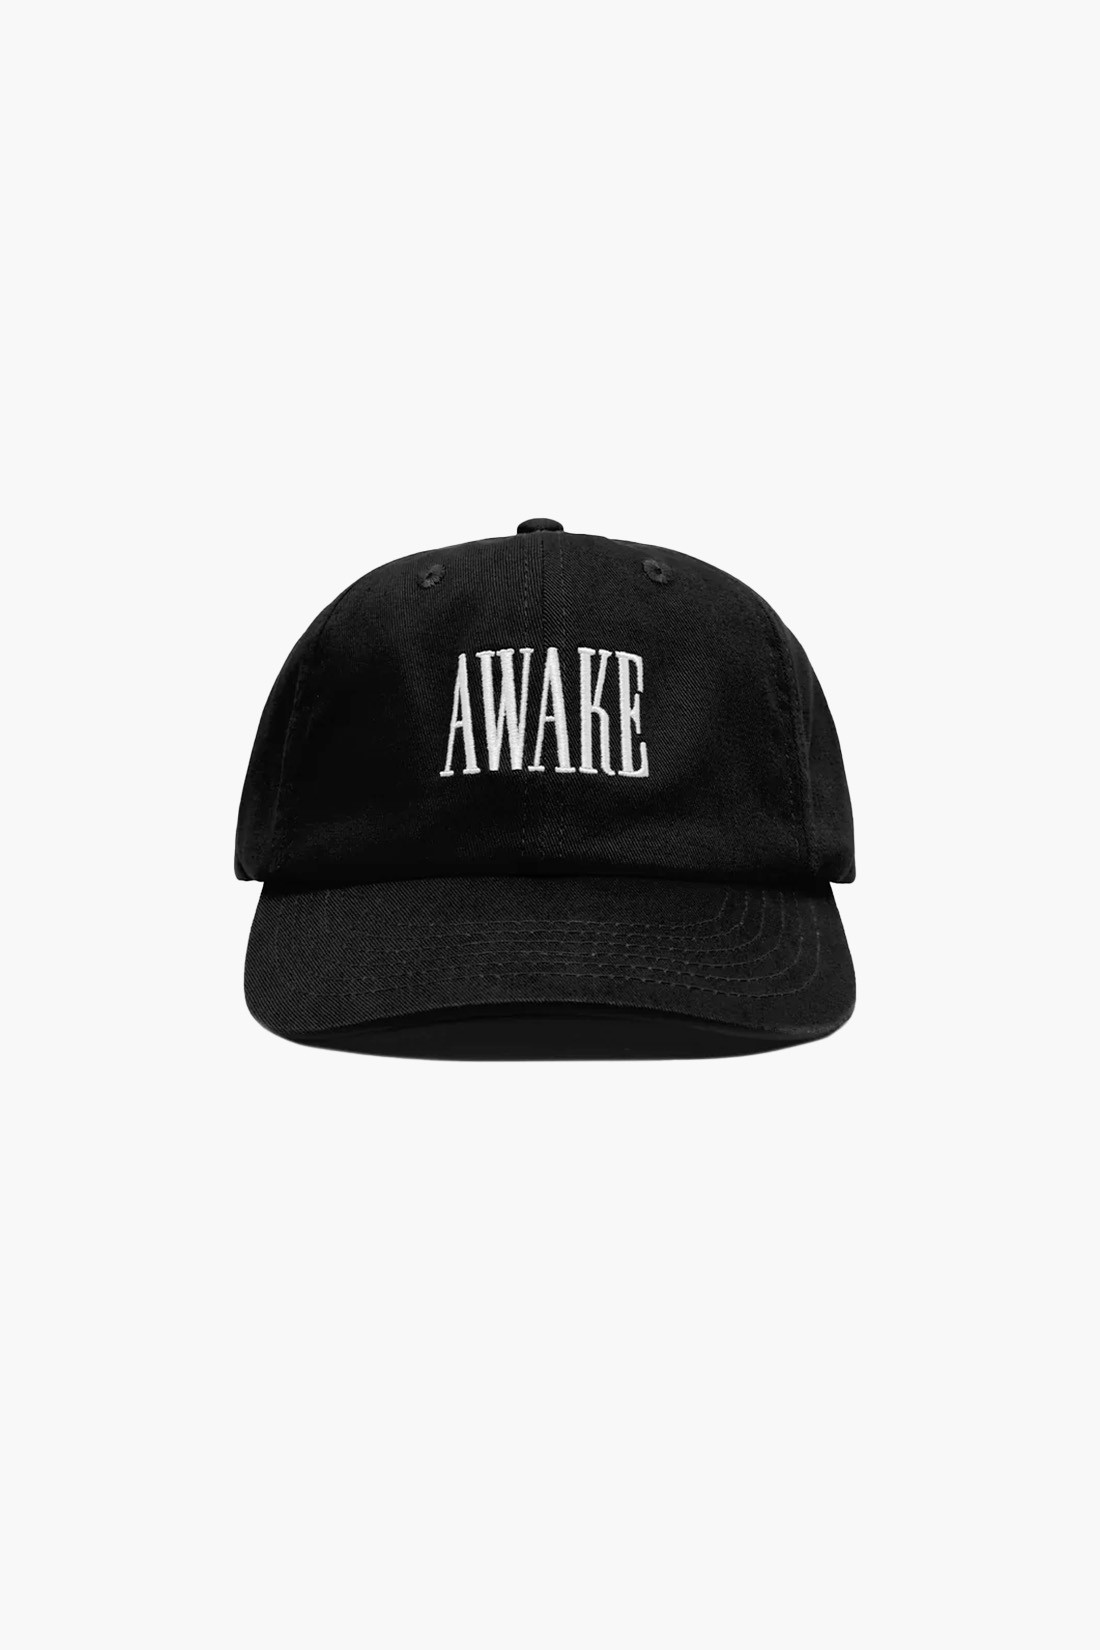 Awake logo hat Black